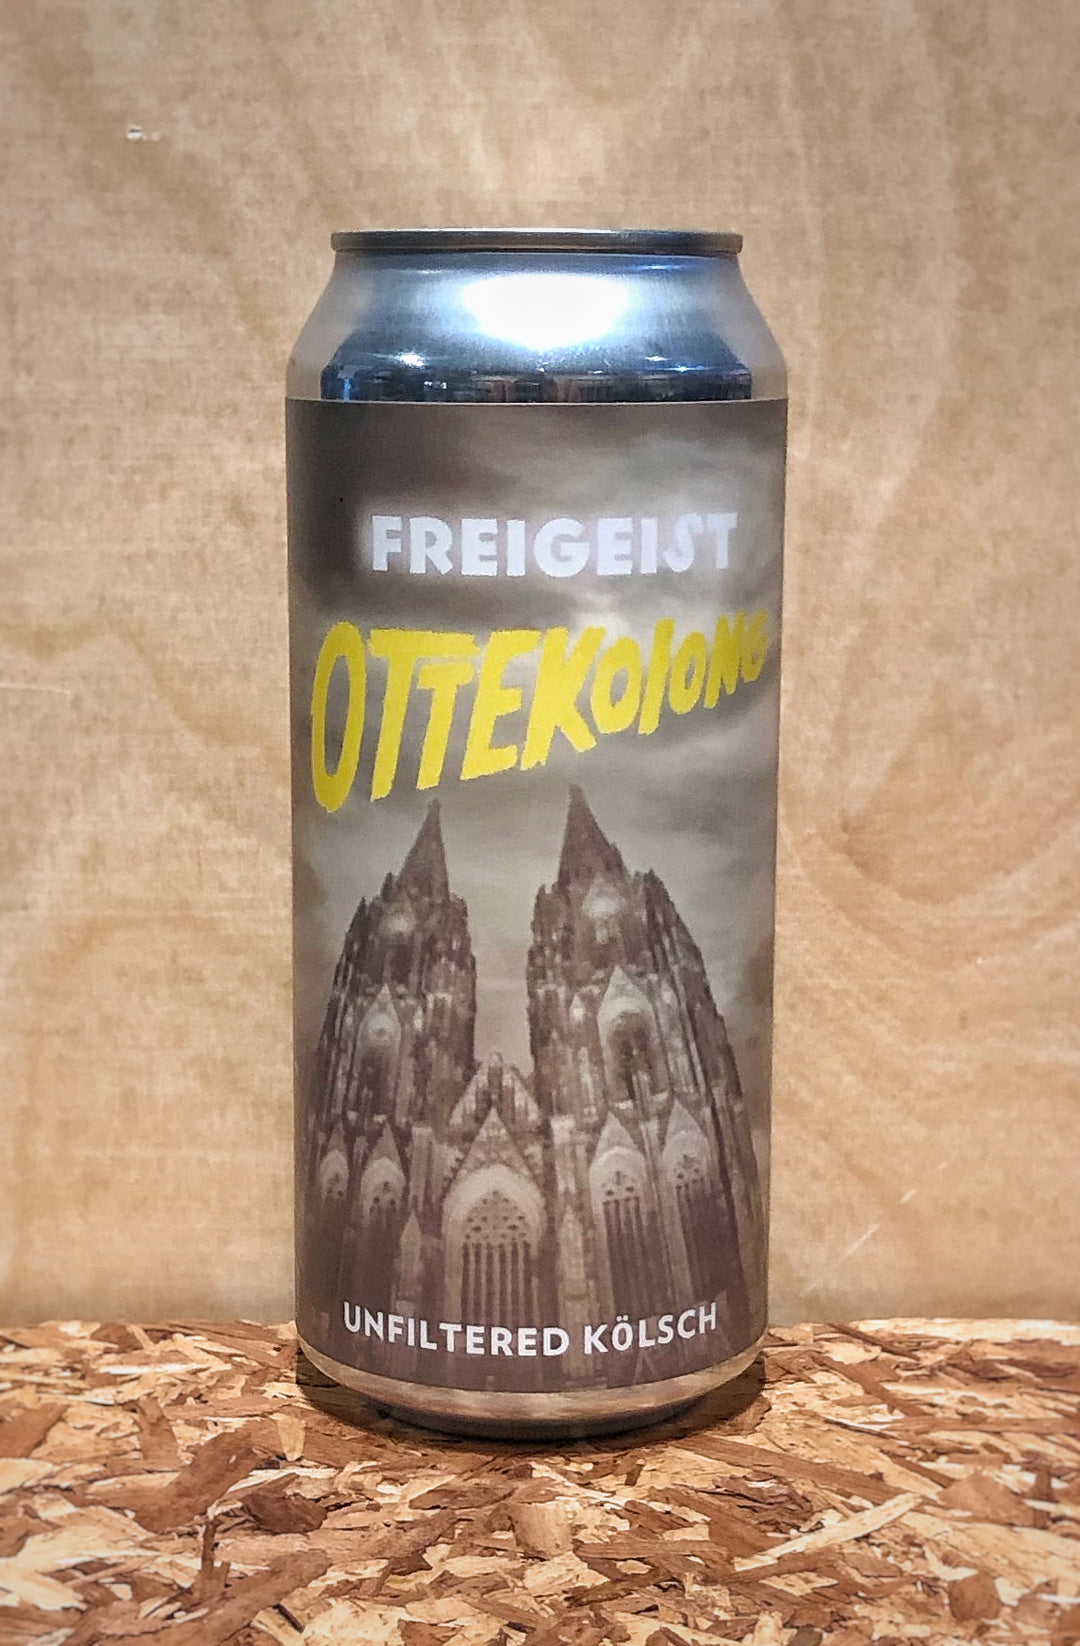 Freigeist Bierkultur 'Ottekolong' Unfiltered Kölsch (Stolberg, Germany)